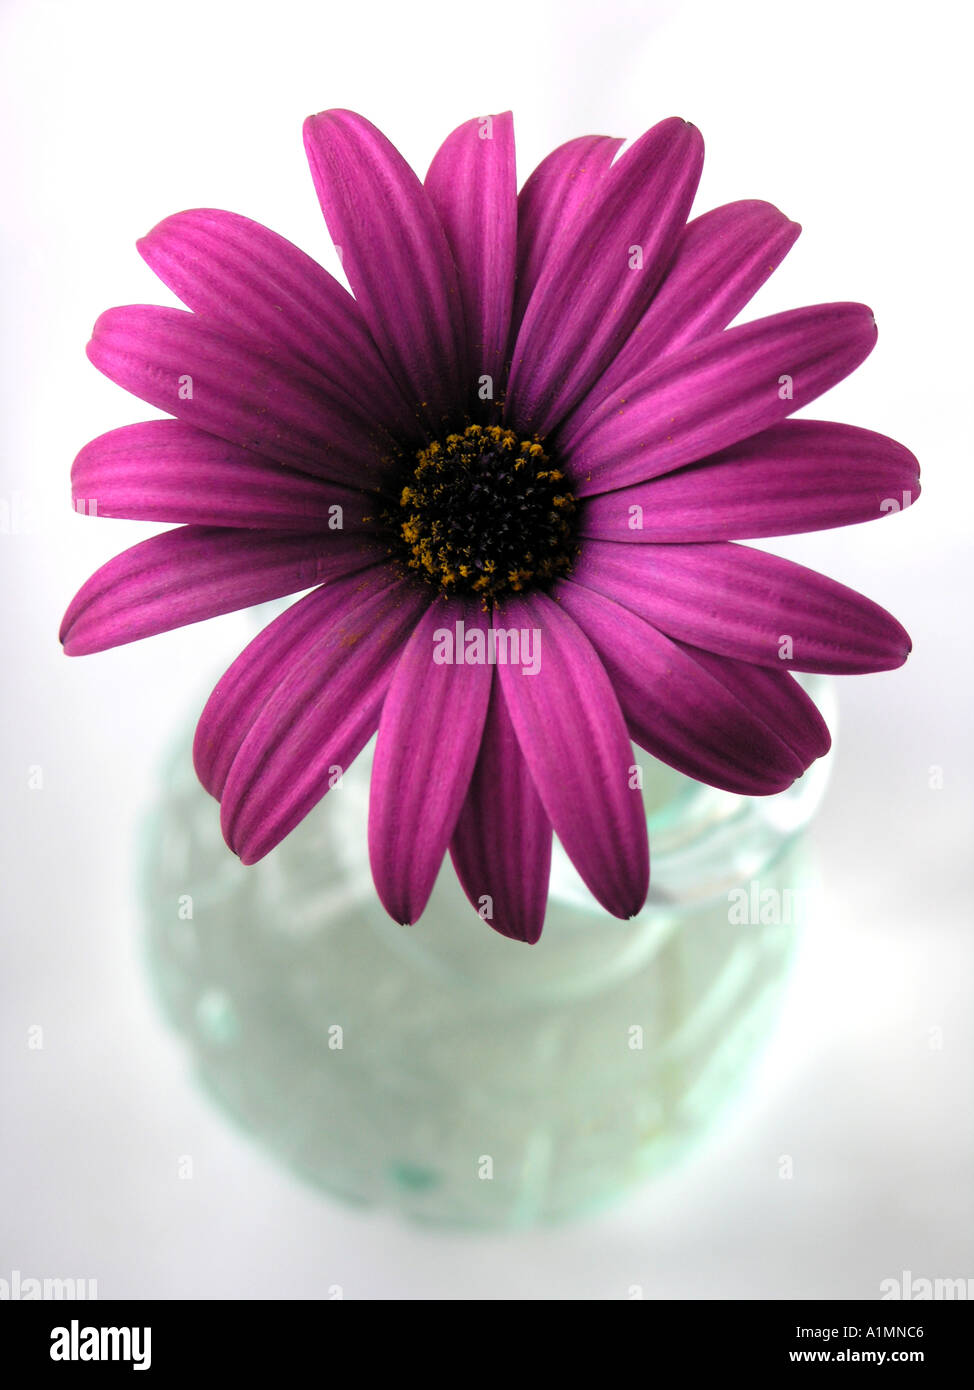 Daisy Osteospermum violet dans un vase de verre Banque D'Images